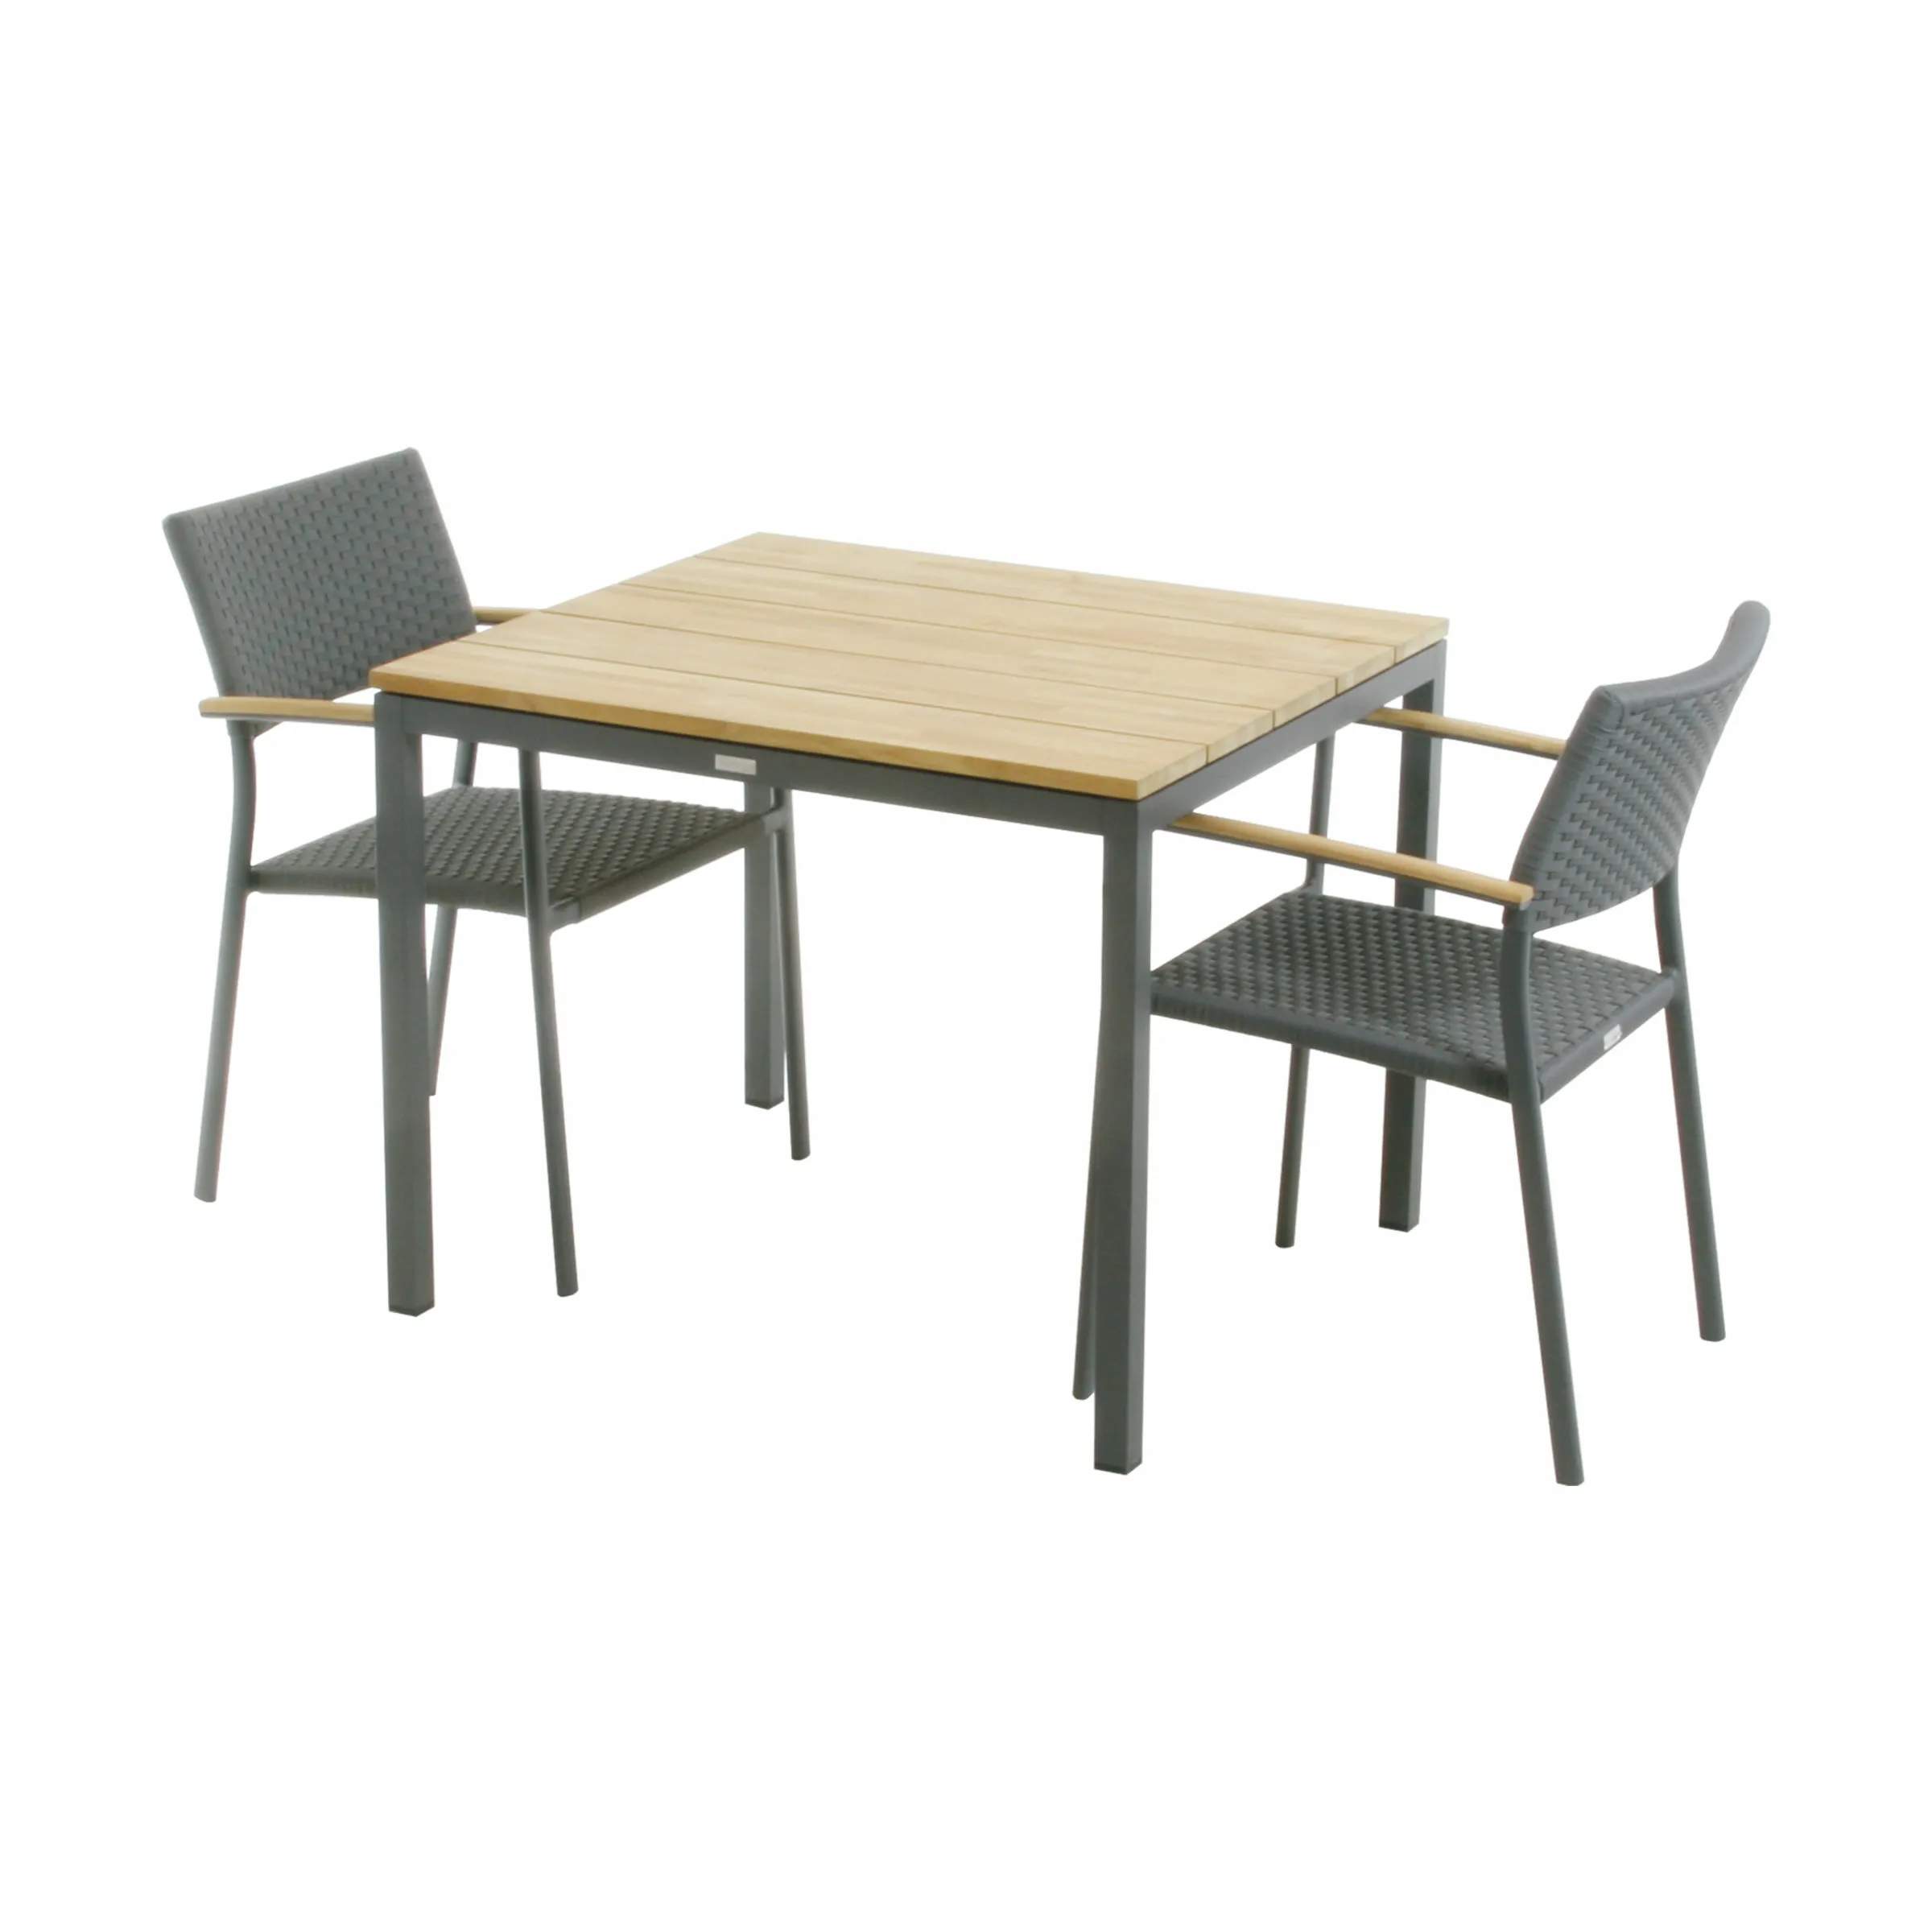 Toscana Siena Havemøbelsæt - 1 bord og 2 stole, antracit/teak, large